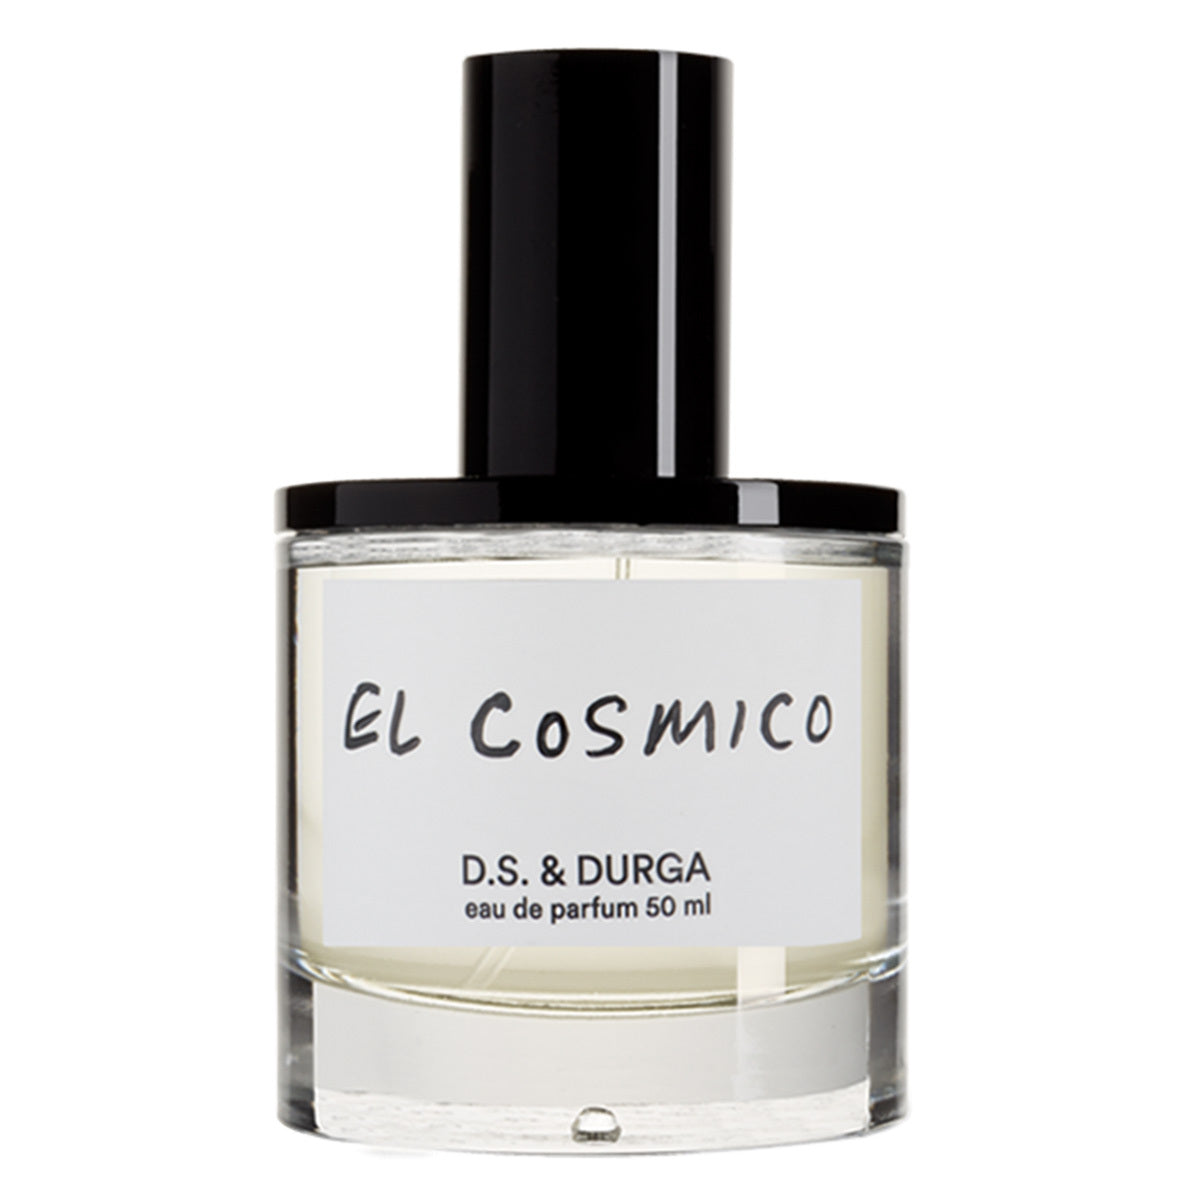 Primary image of El Cosmico Eau de Parfum